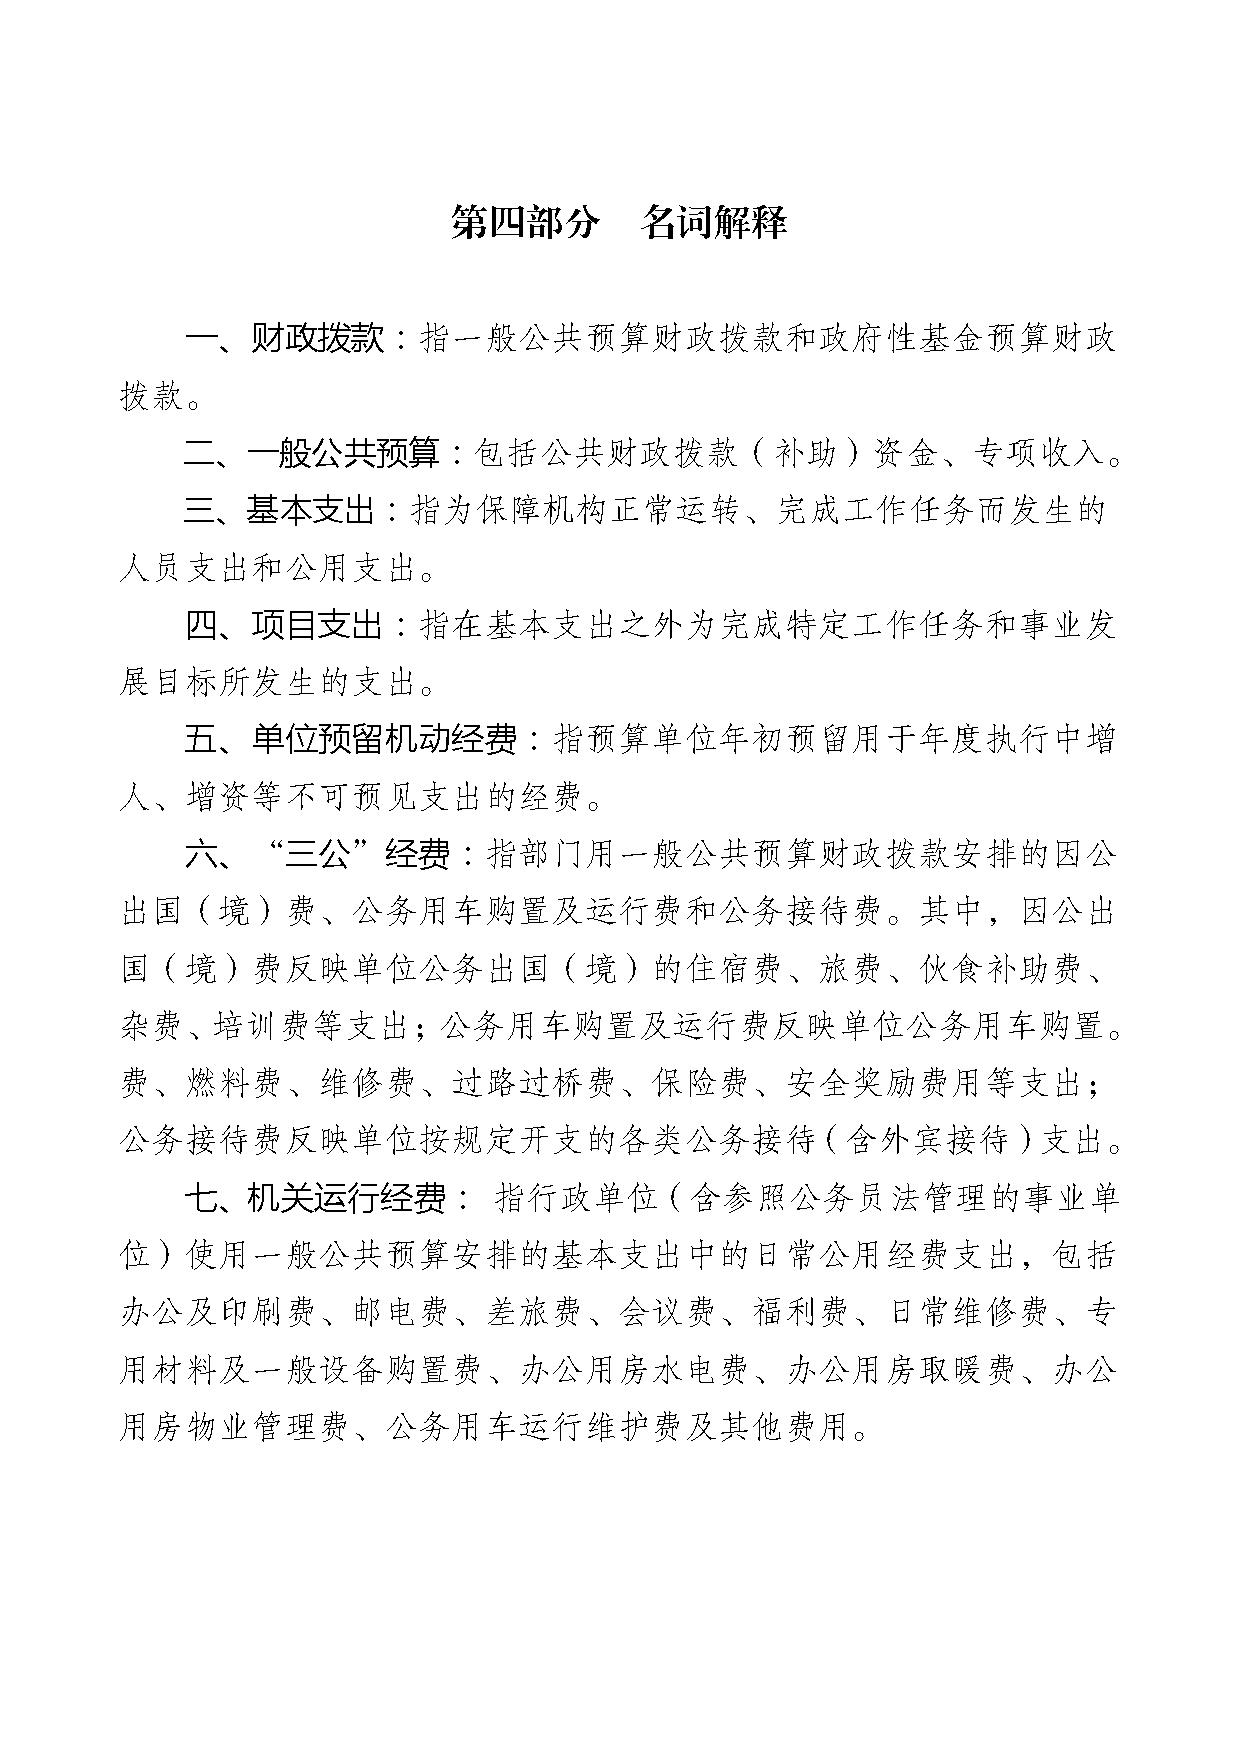 2021年度中国民主建国会江苏省委员会部门预算公开-31.jpg